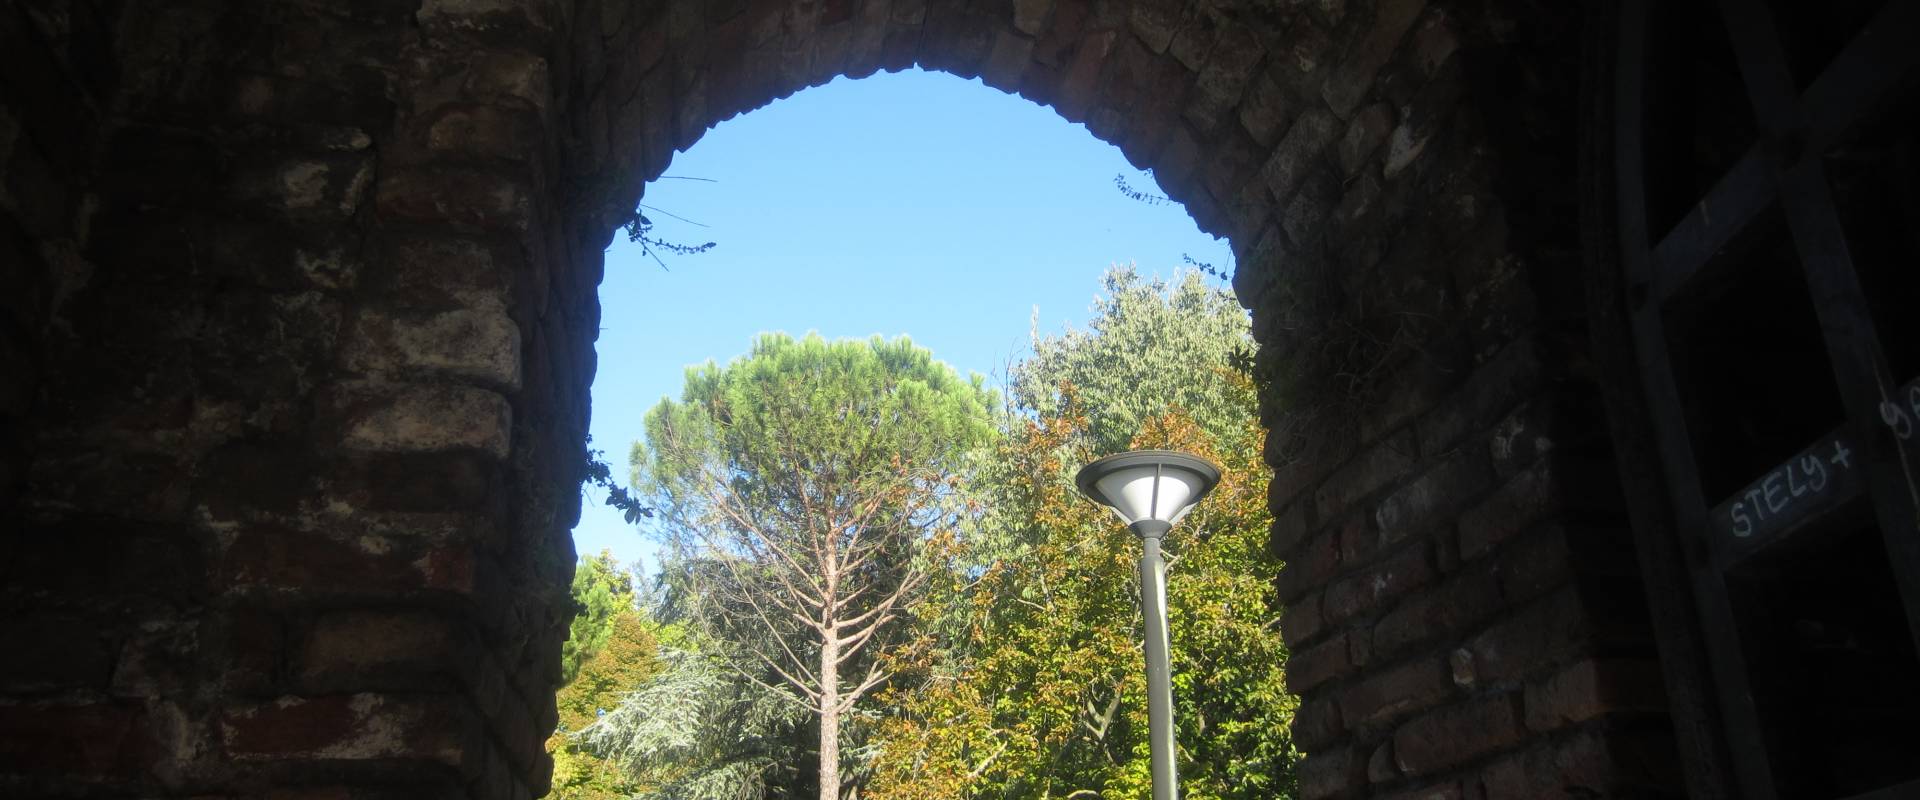 Rocca Brancaleone - entrata foto di Ebe94